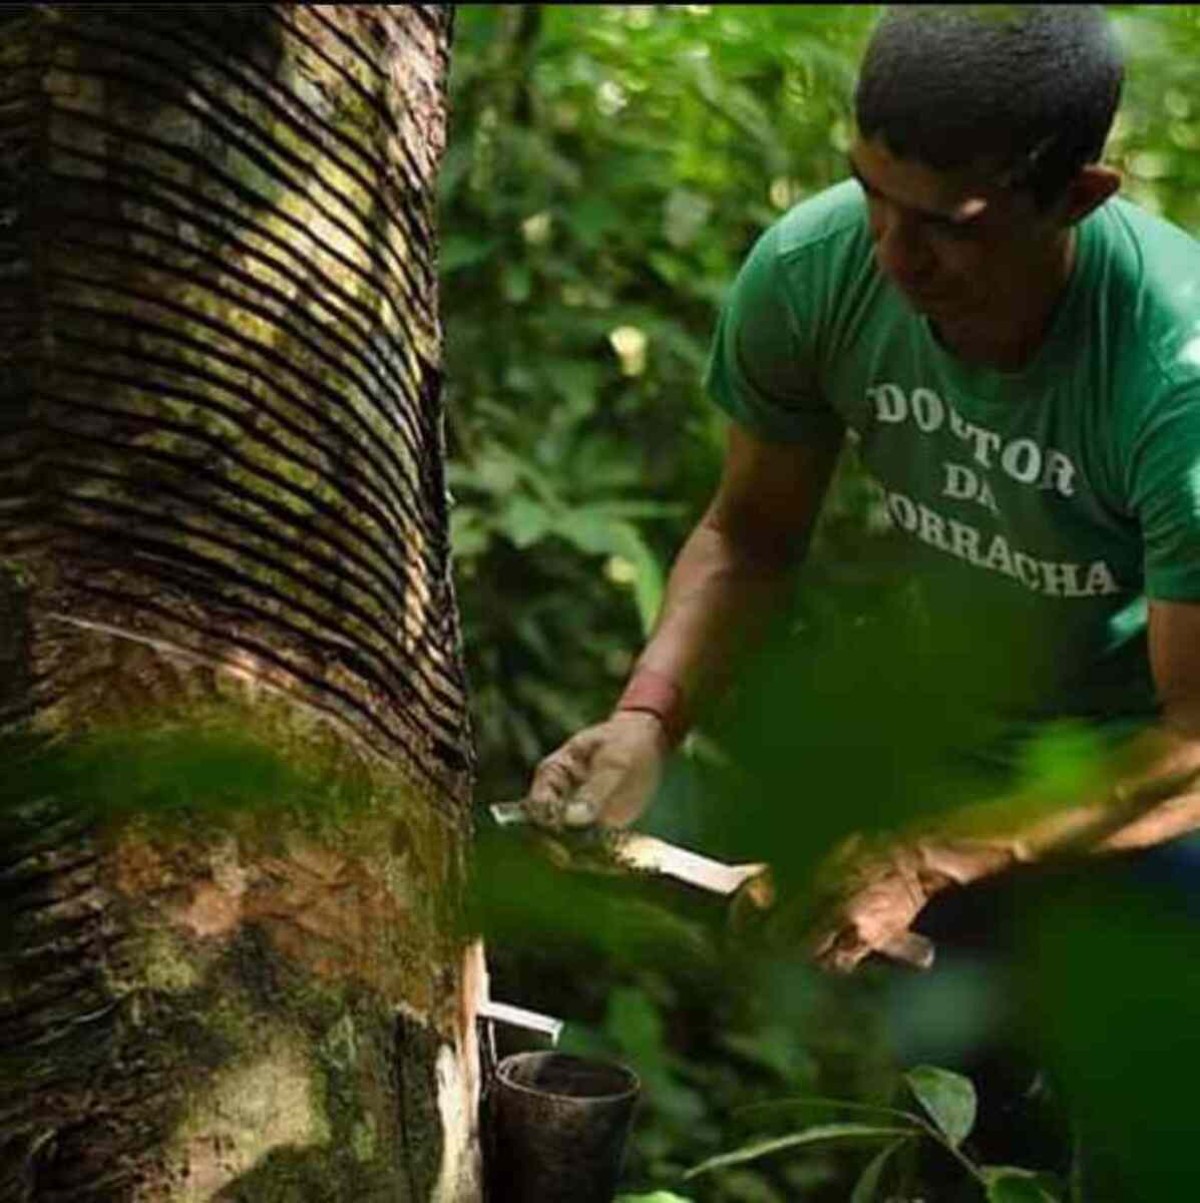 Soldado da Borracha do século 21: o seringueiro que ressignificou a extração do látex na Amazônia